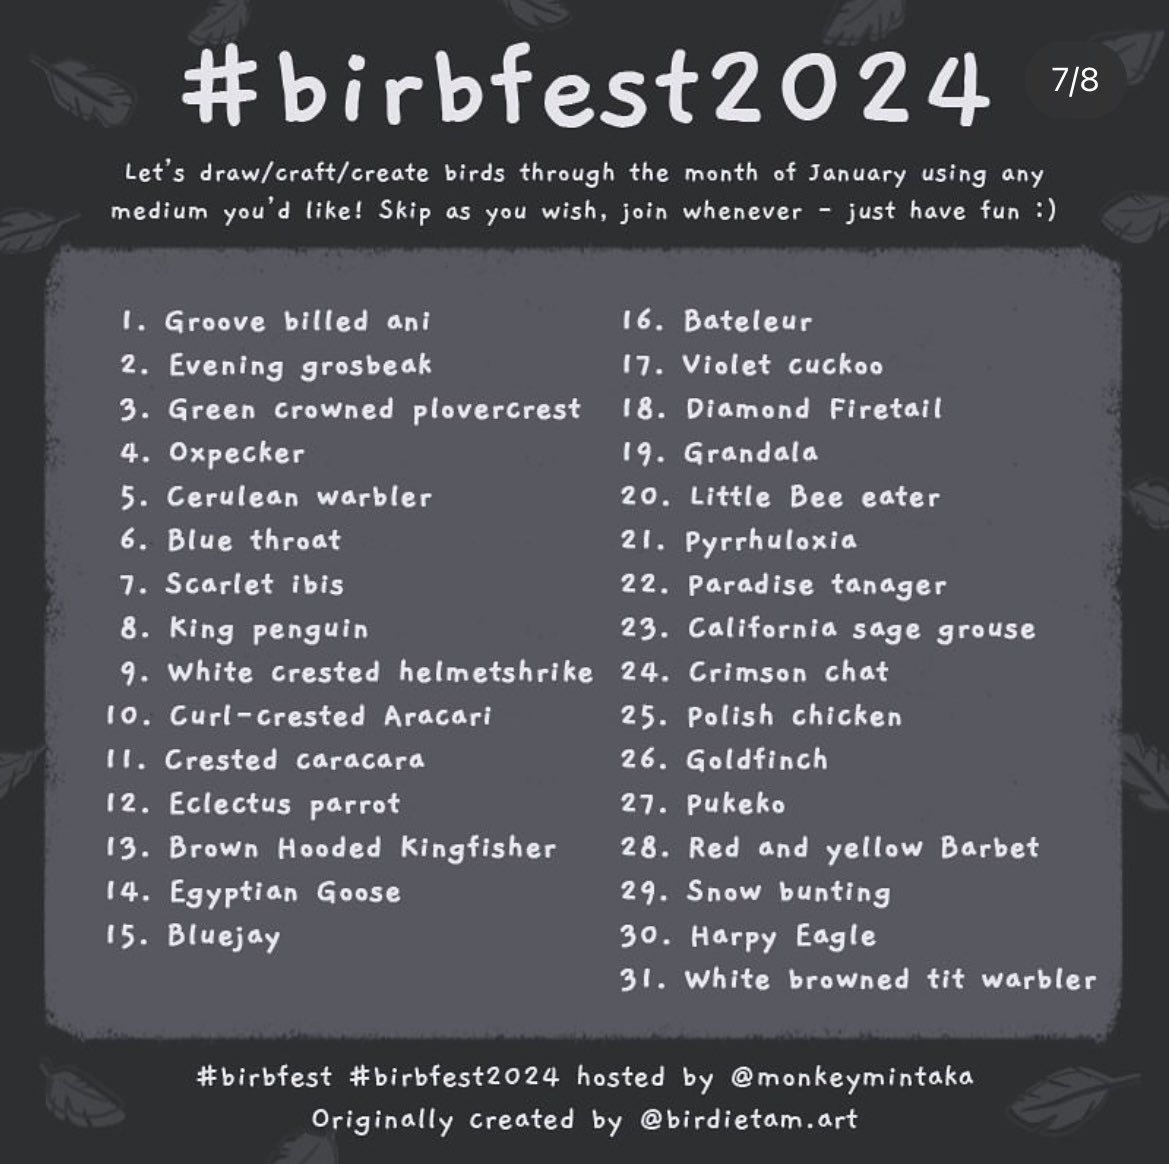 #birbfest day 3: Evening Grosbeak 

#birbfest2024 #birbfestday2 #birdillustrations #birdloversdaily